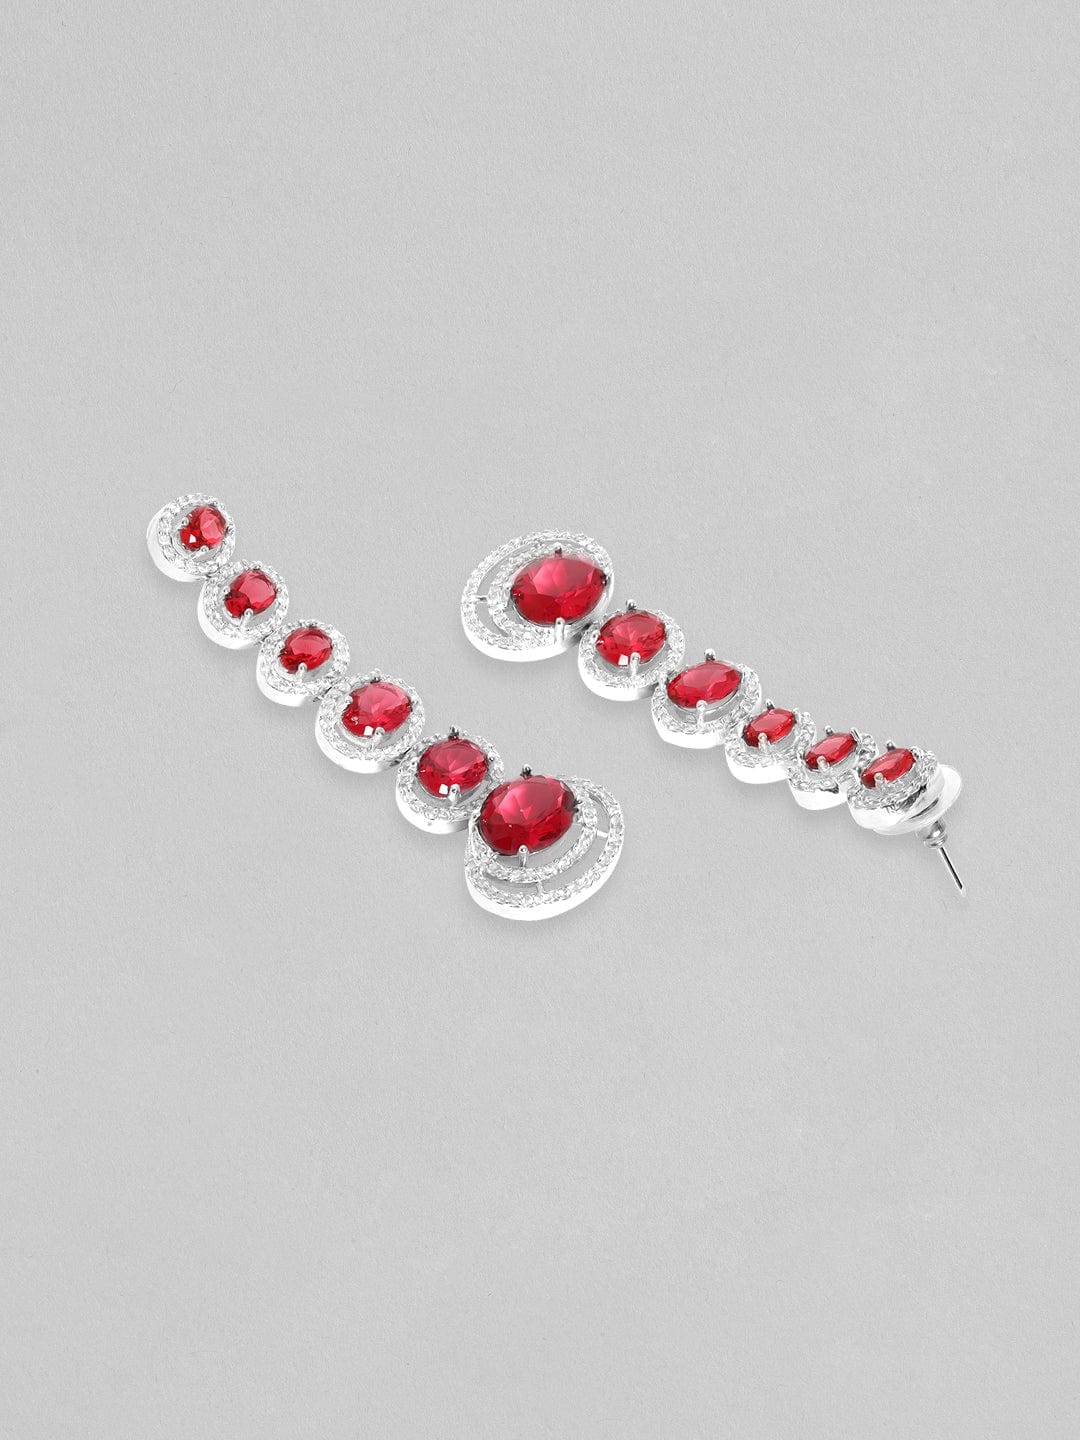 Rubans Rhodium Plated Ruby Red Oval Cut Zirconia Long Dangle Earrings Earrings